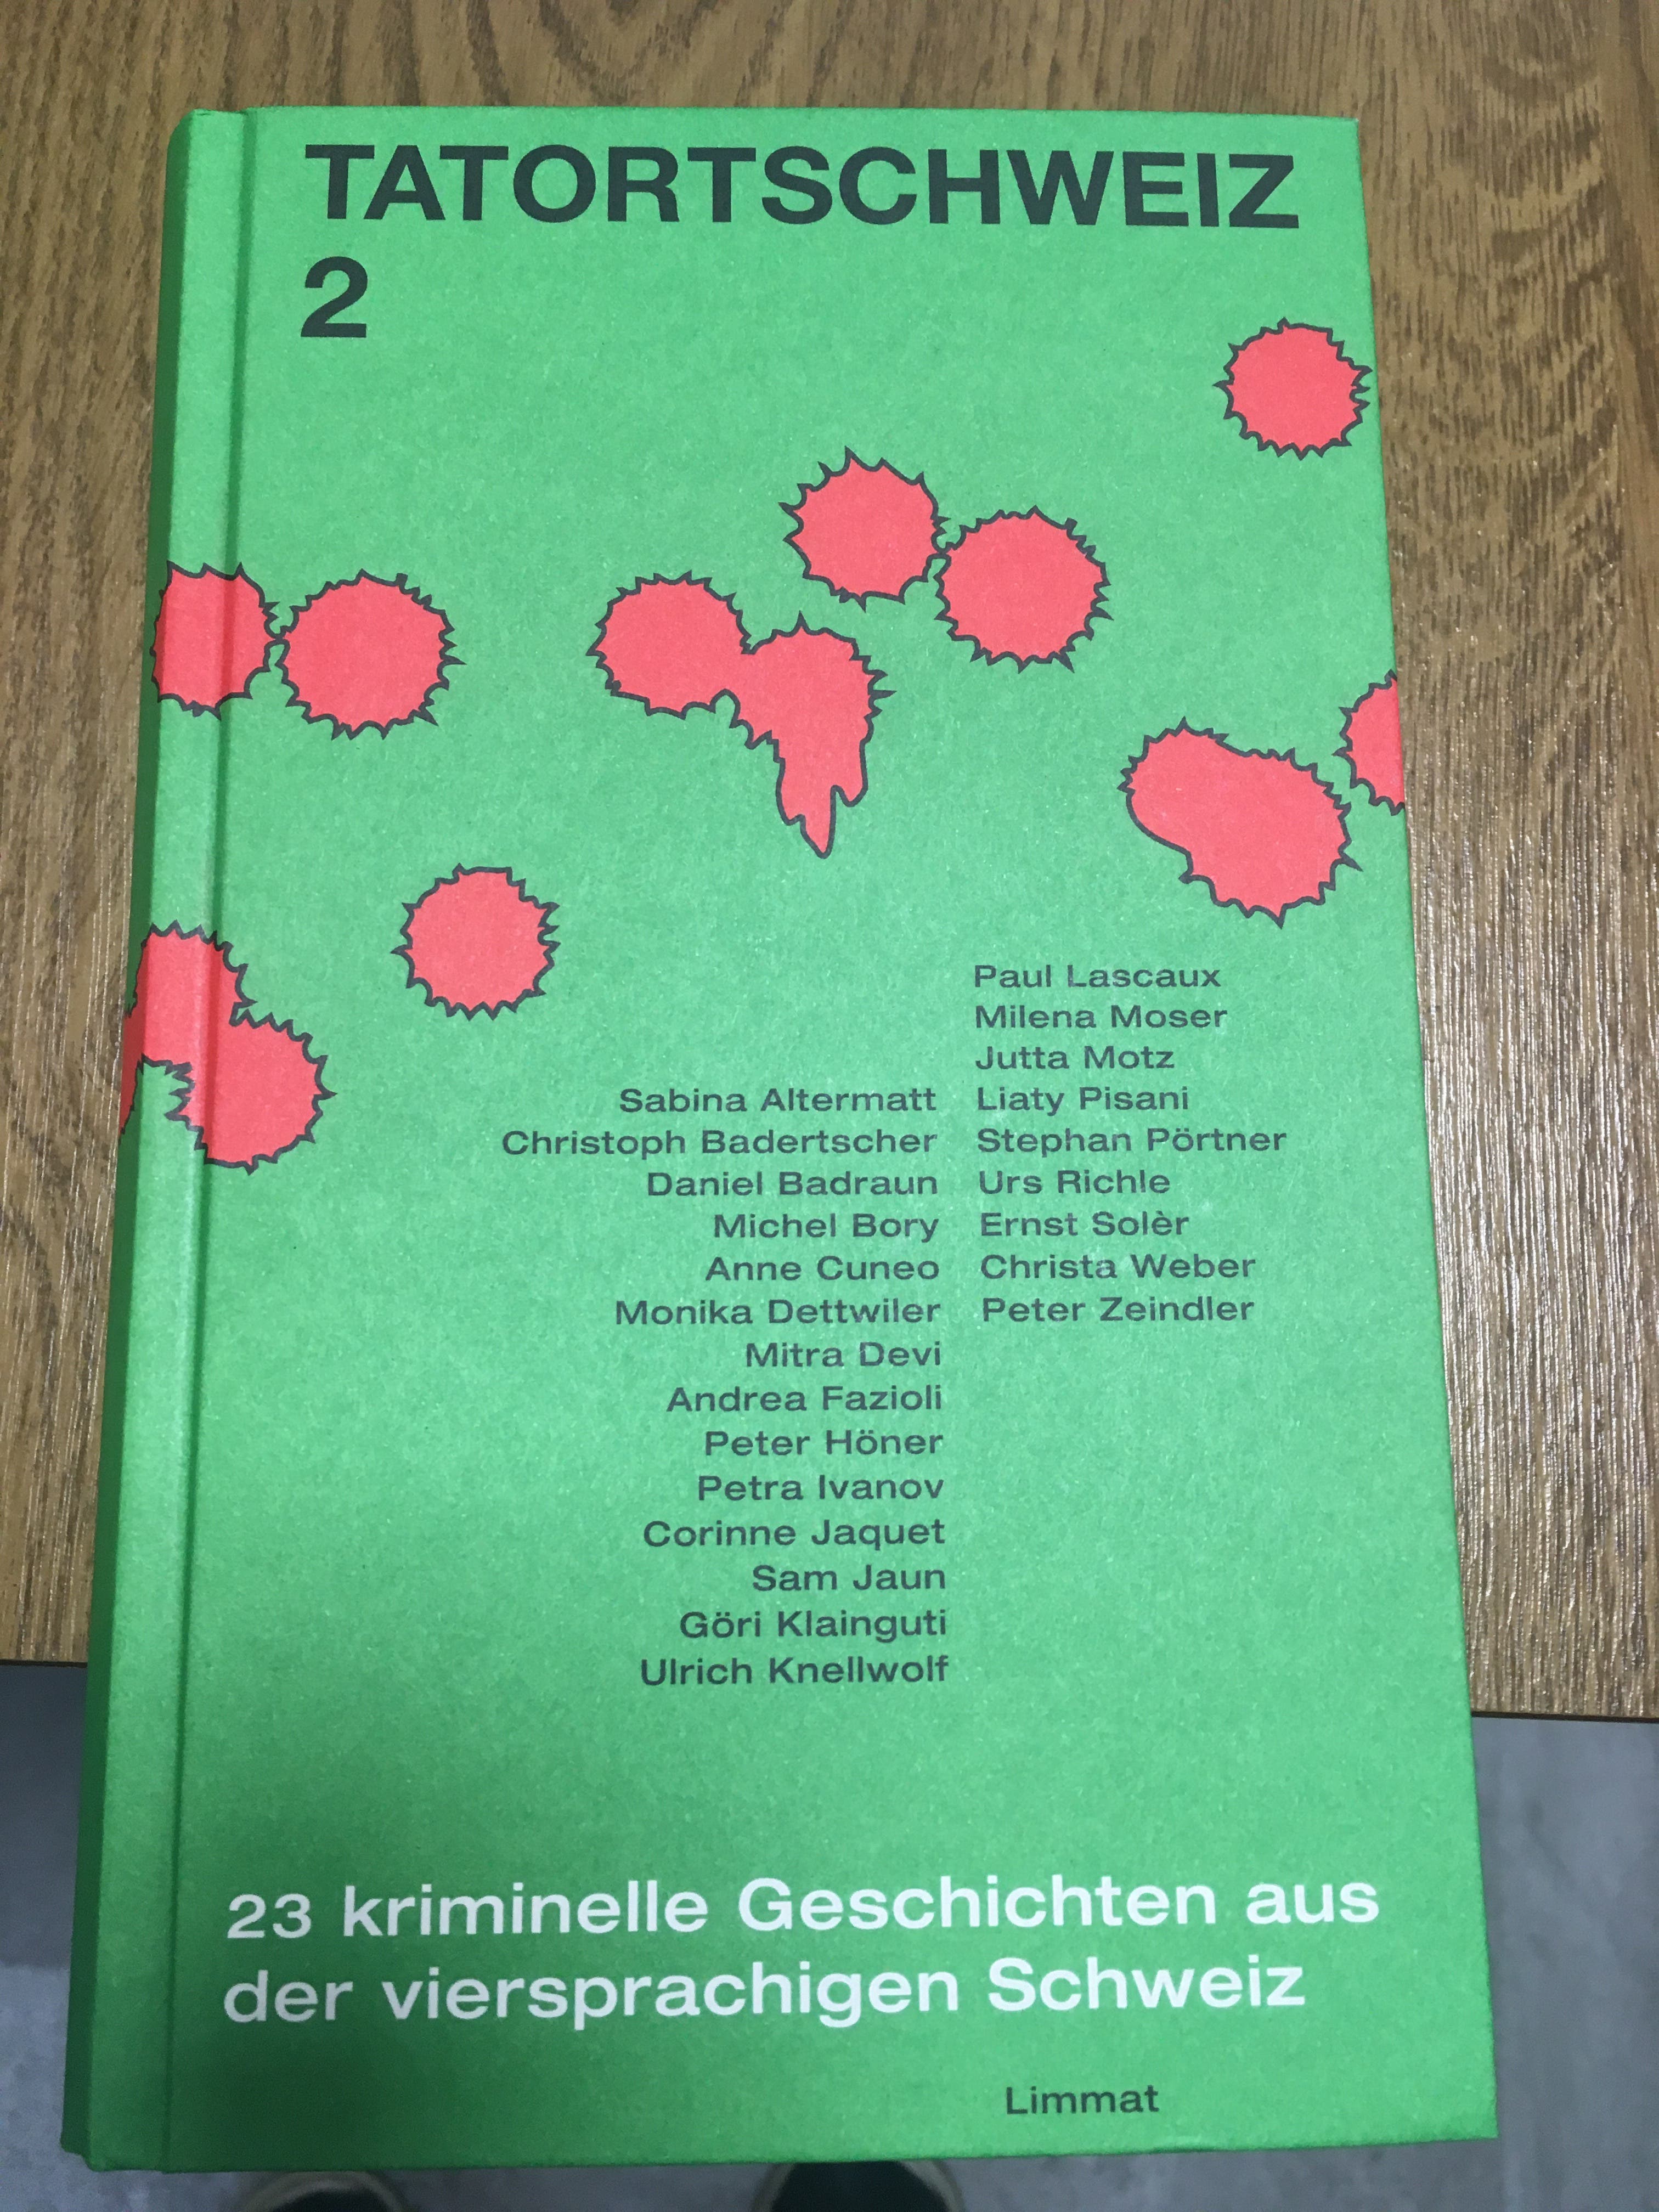 Anthologien mit Geschichten von Schweizer Autorinnen und Autoren.